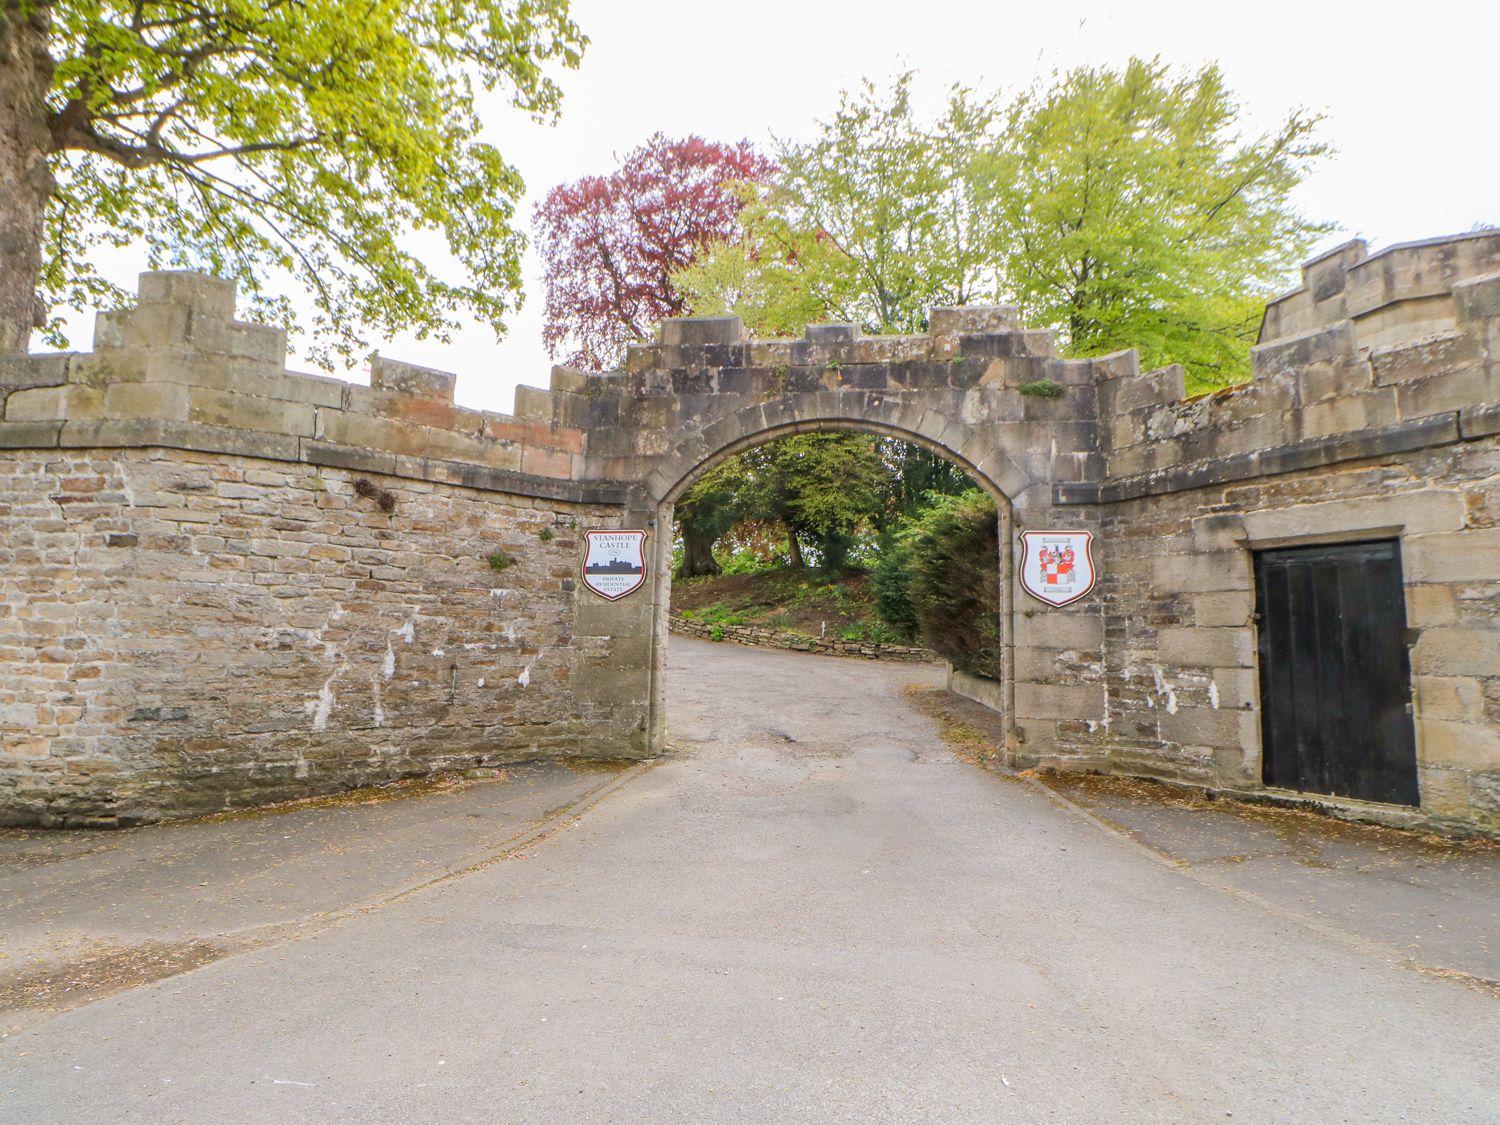 Castle Keep, Stanhope